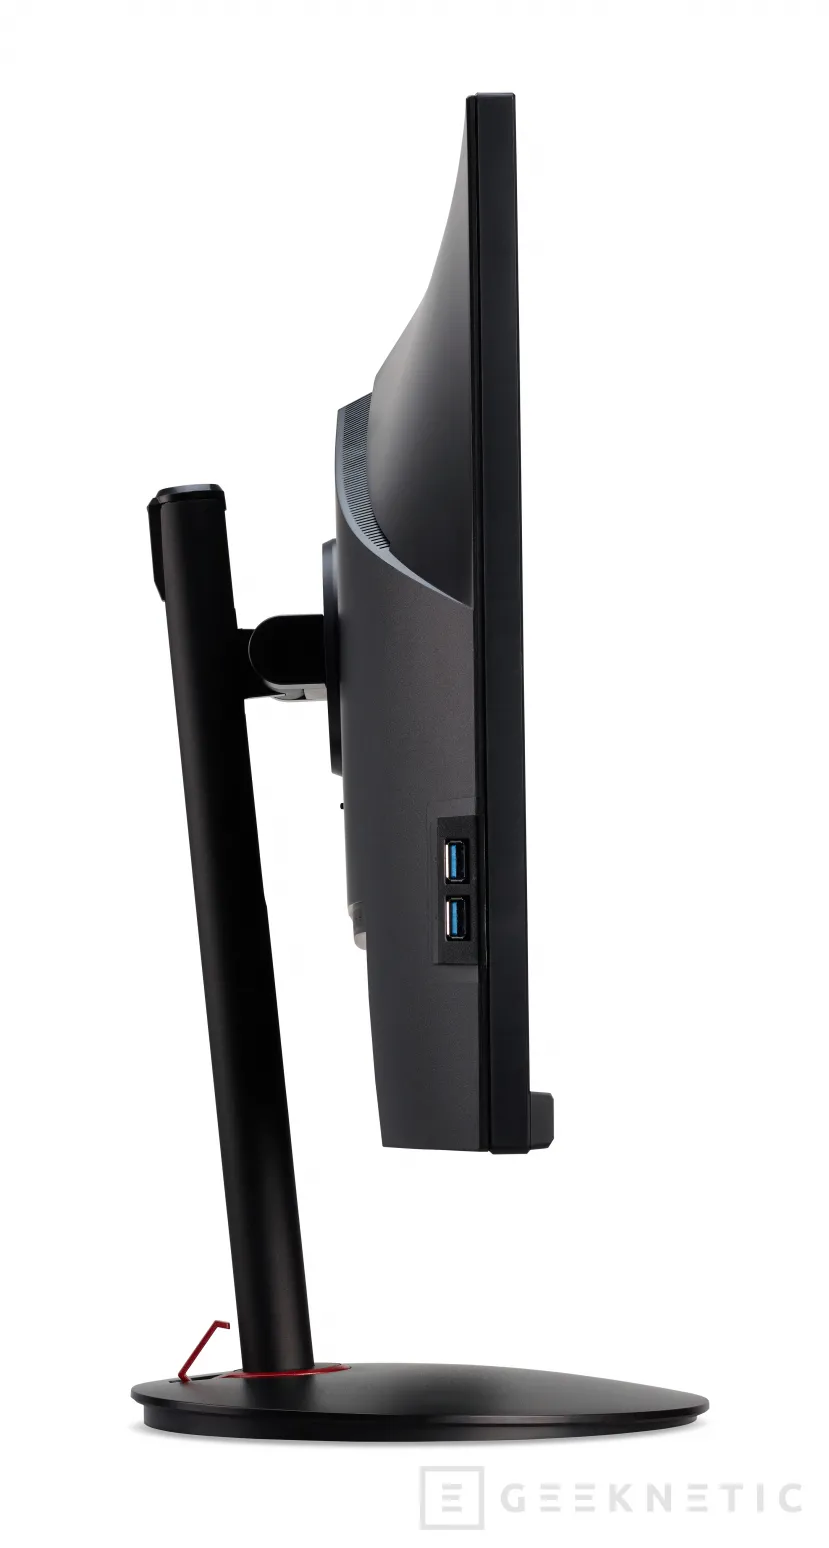 Geeknetic Acer anuncia el monitor para gaming Nitro XV272U KF con 300 Hz de refresco y DisplayHDR 600 3